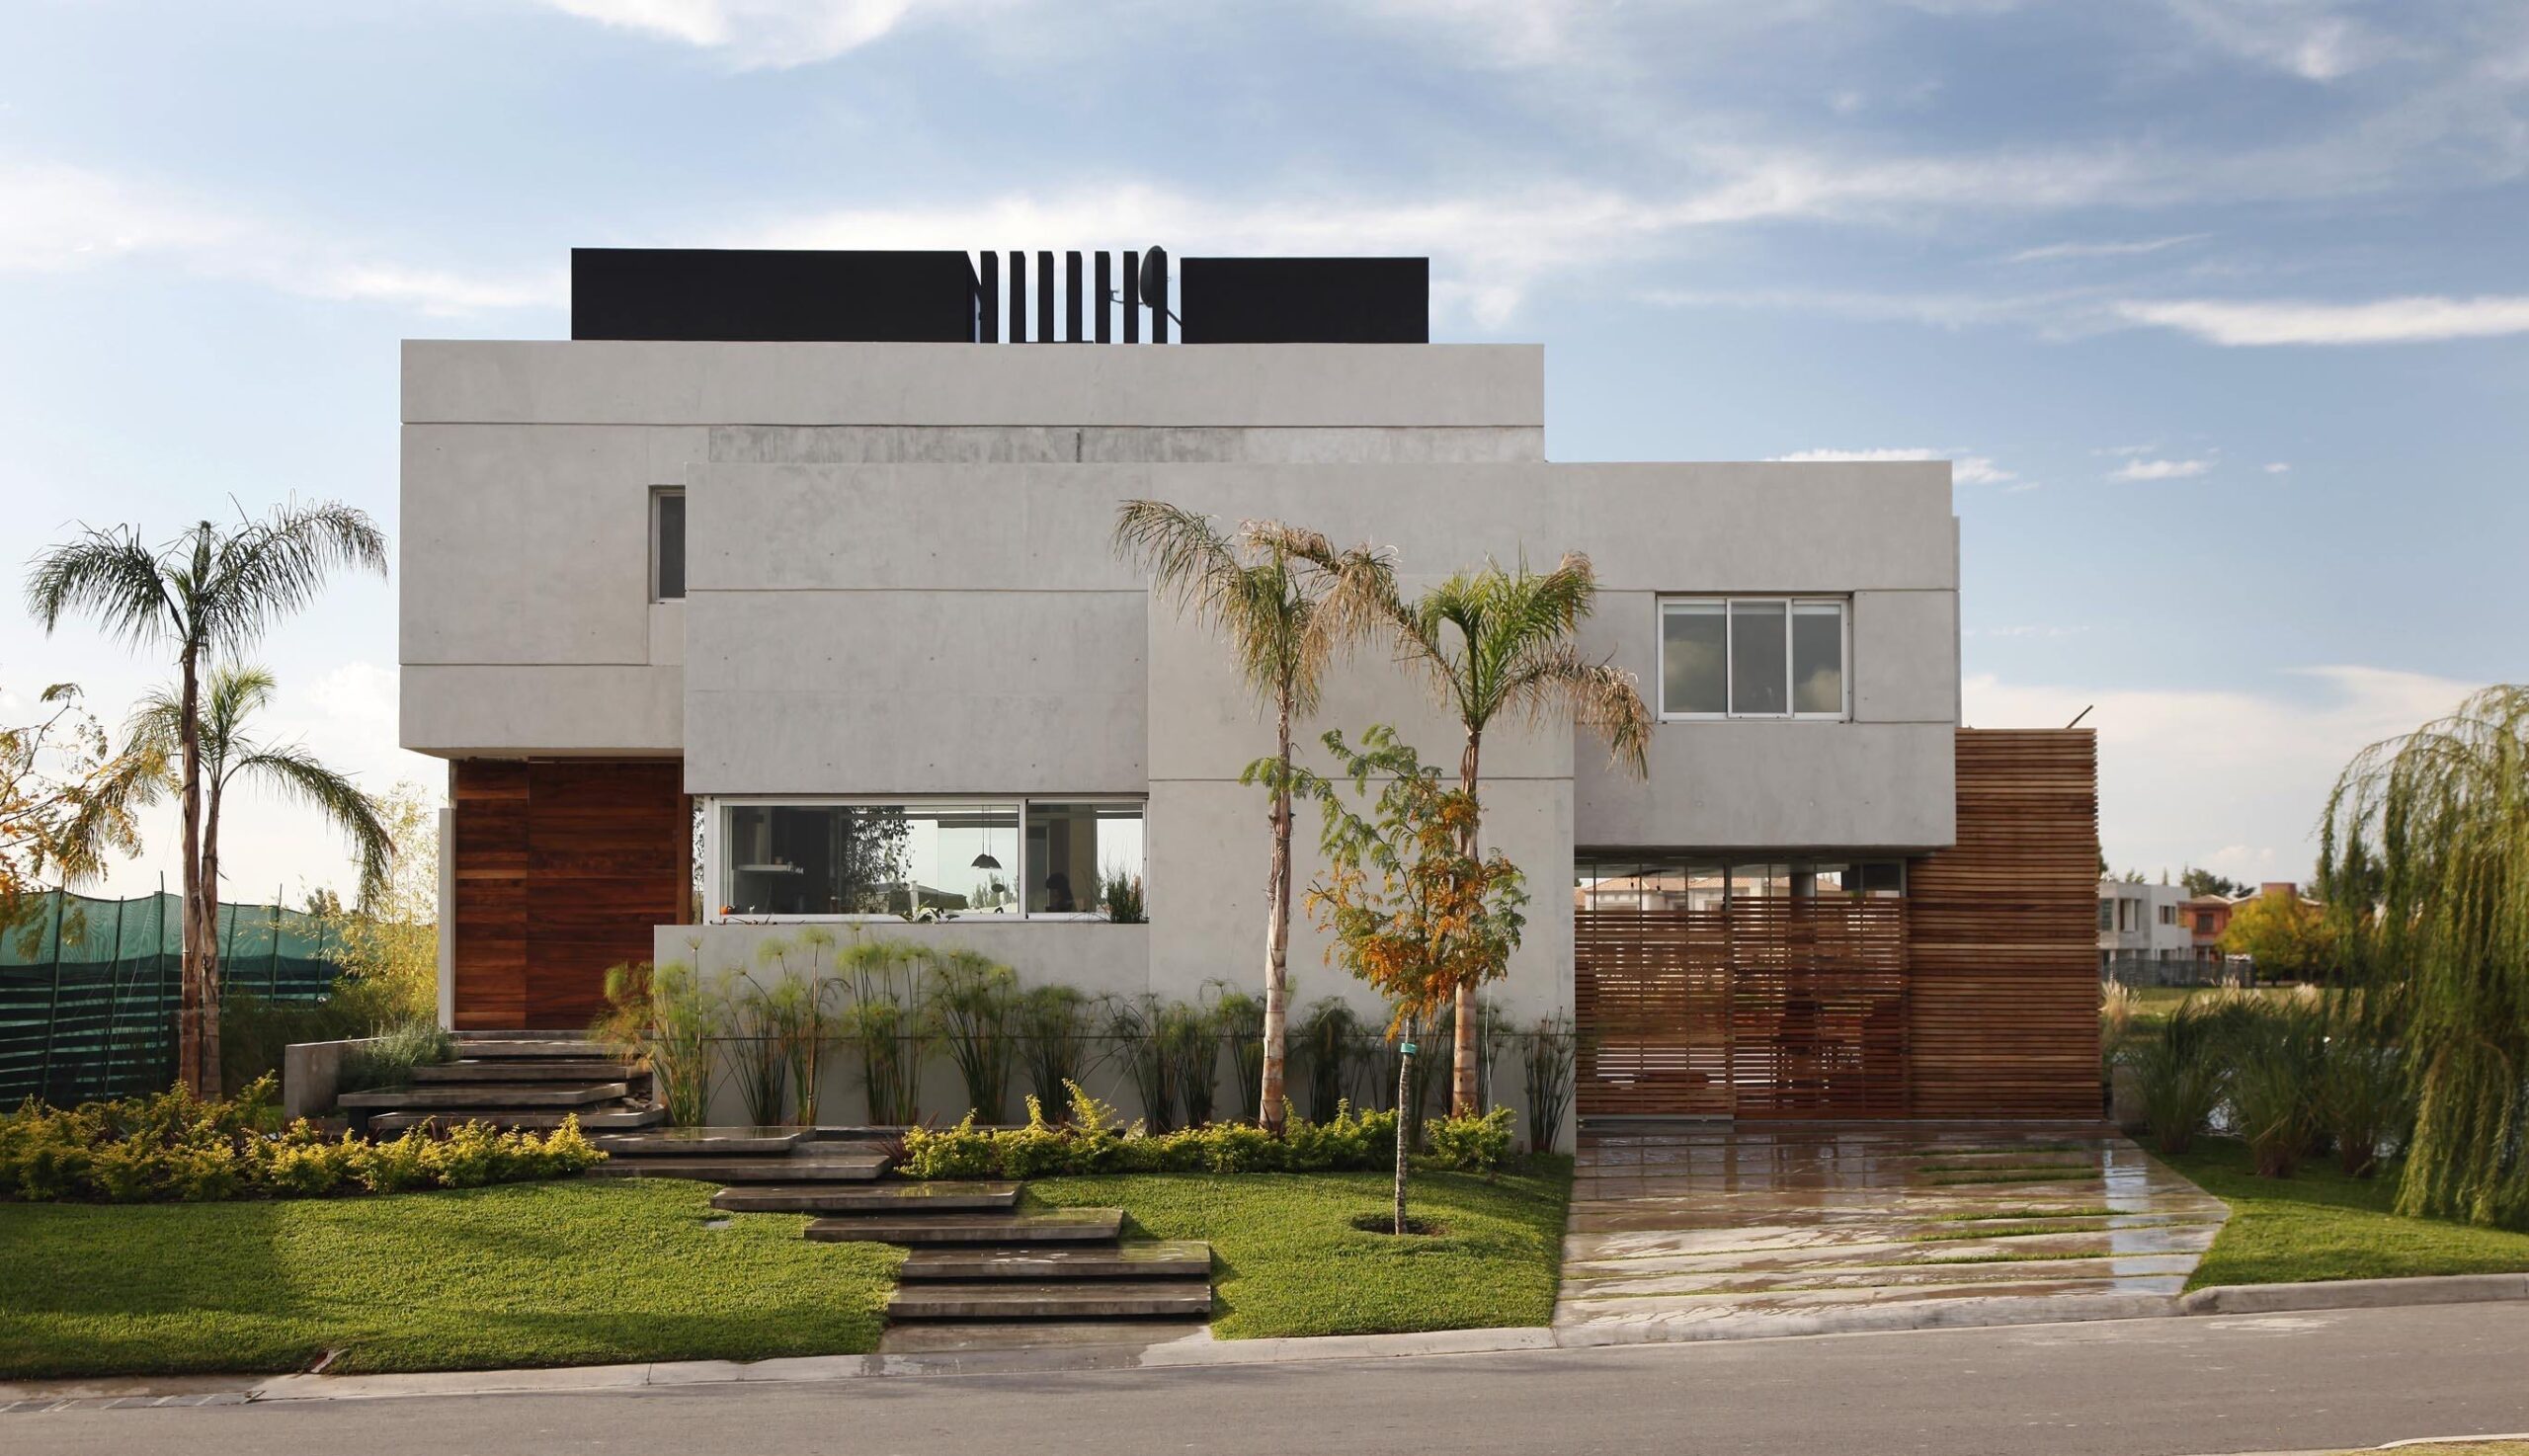 Desain rumah minimalis 2 lantai persegi panjang - Thegorbalsla